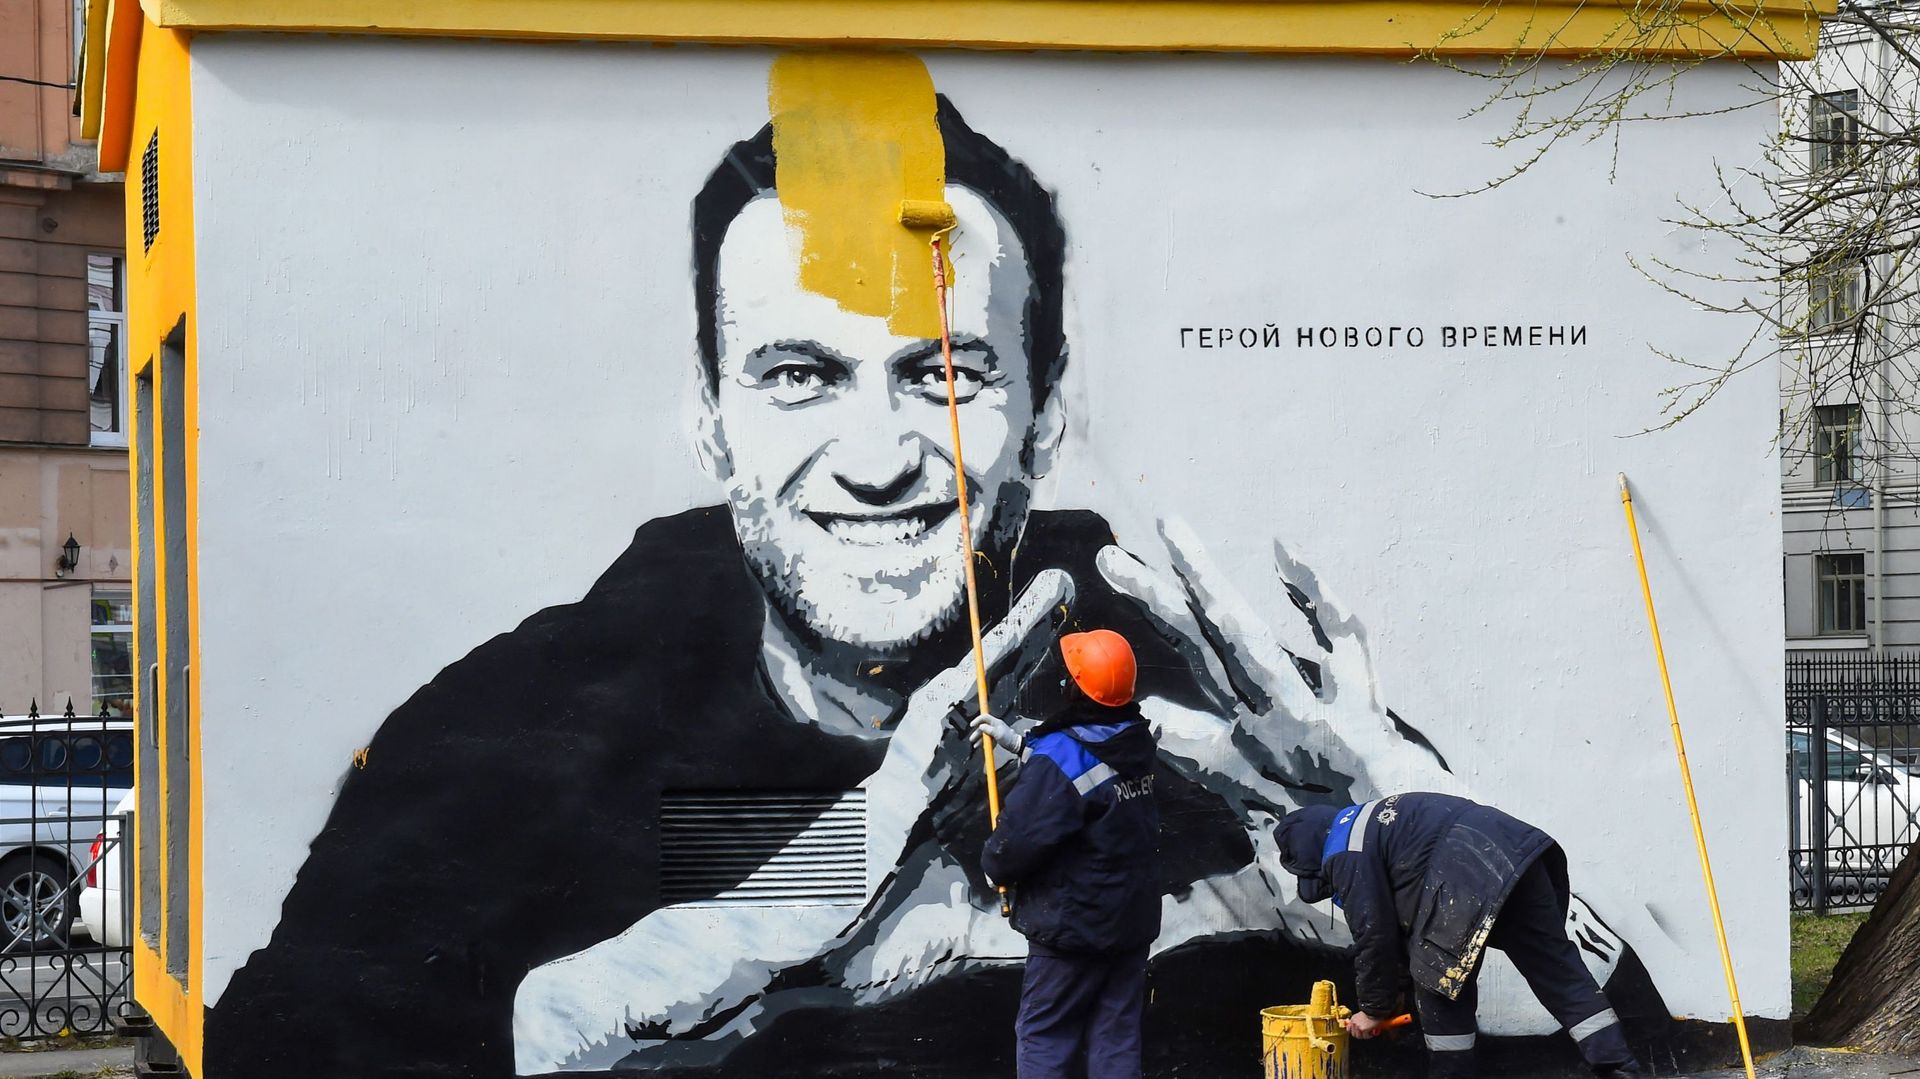 Un ouvrier peint sur un graffiti d'Alexei Navalny, critique du Kremlin emprisonné, à Saint-Pétersbourg, le 28 avril 2021. L'inscription se lit comme suit : "Le héros des temps nouveaux".